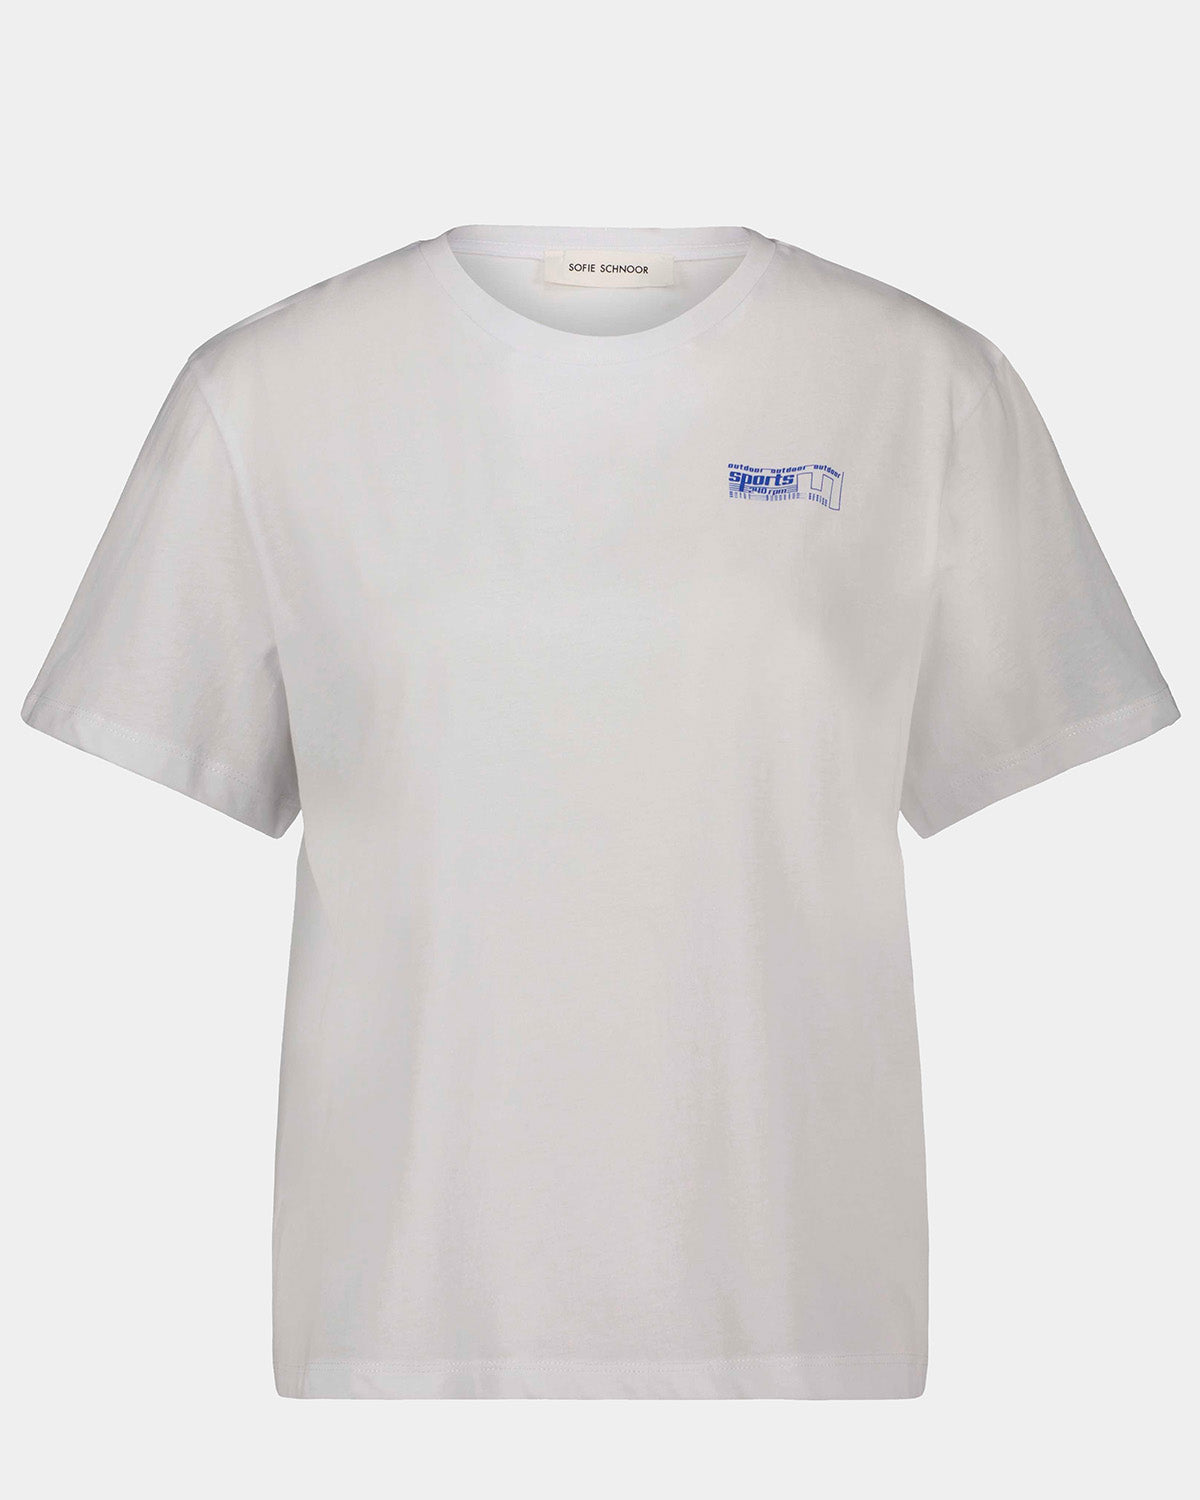 S241330-T-shirt-Brilliant White